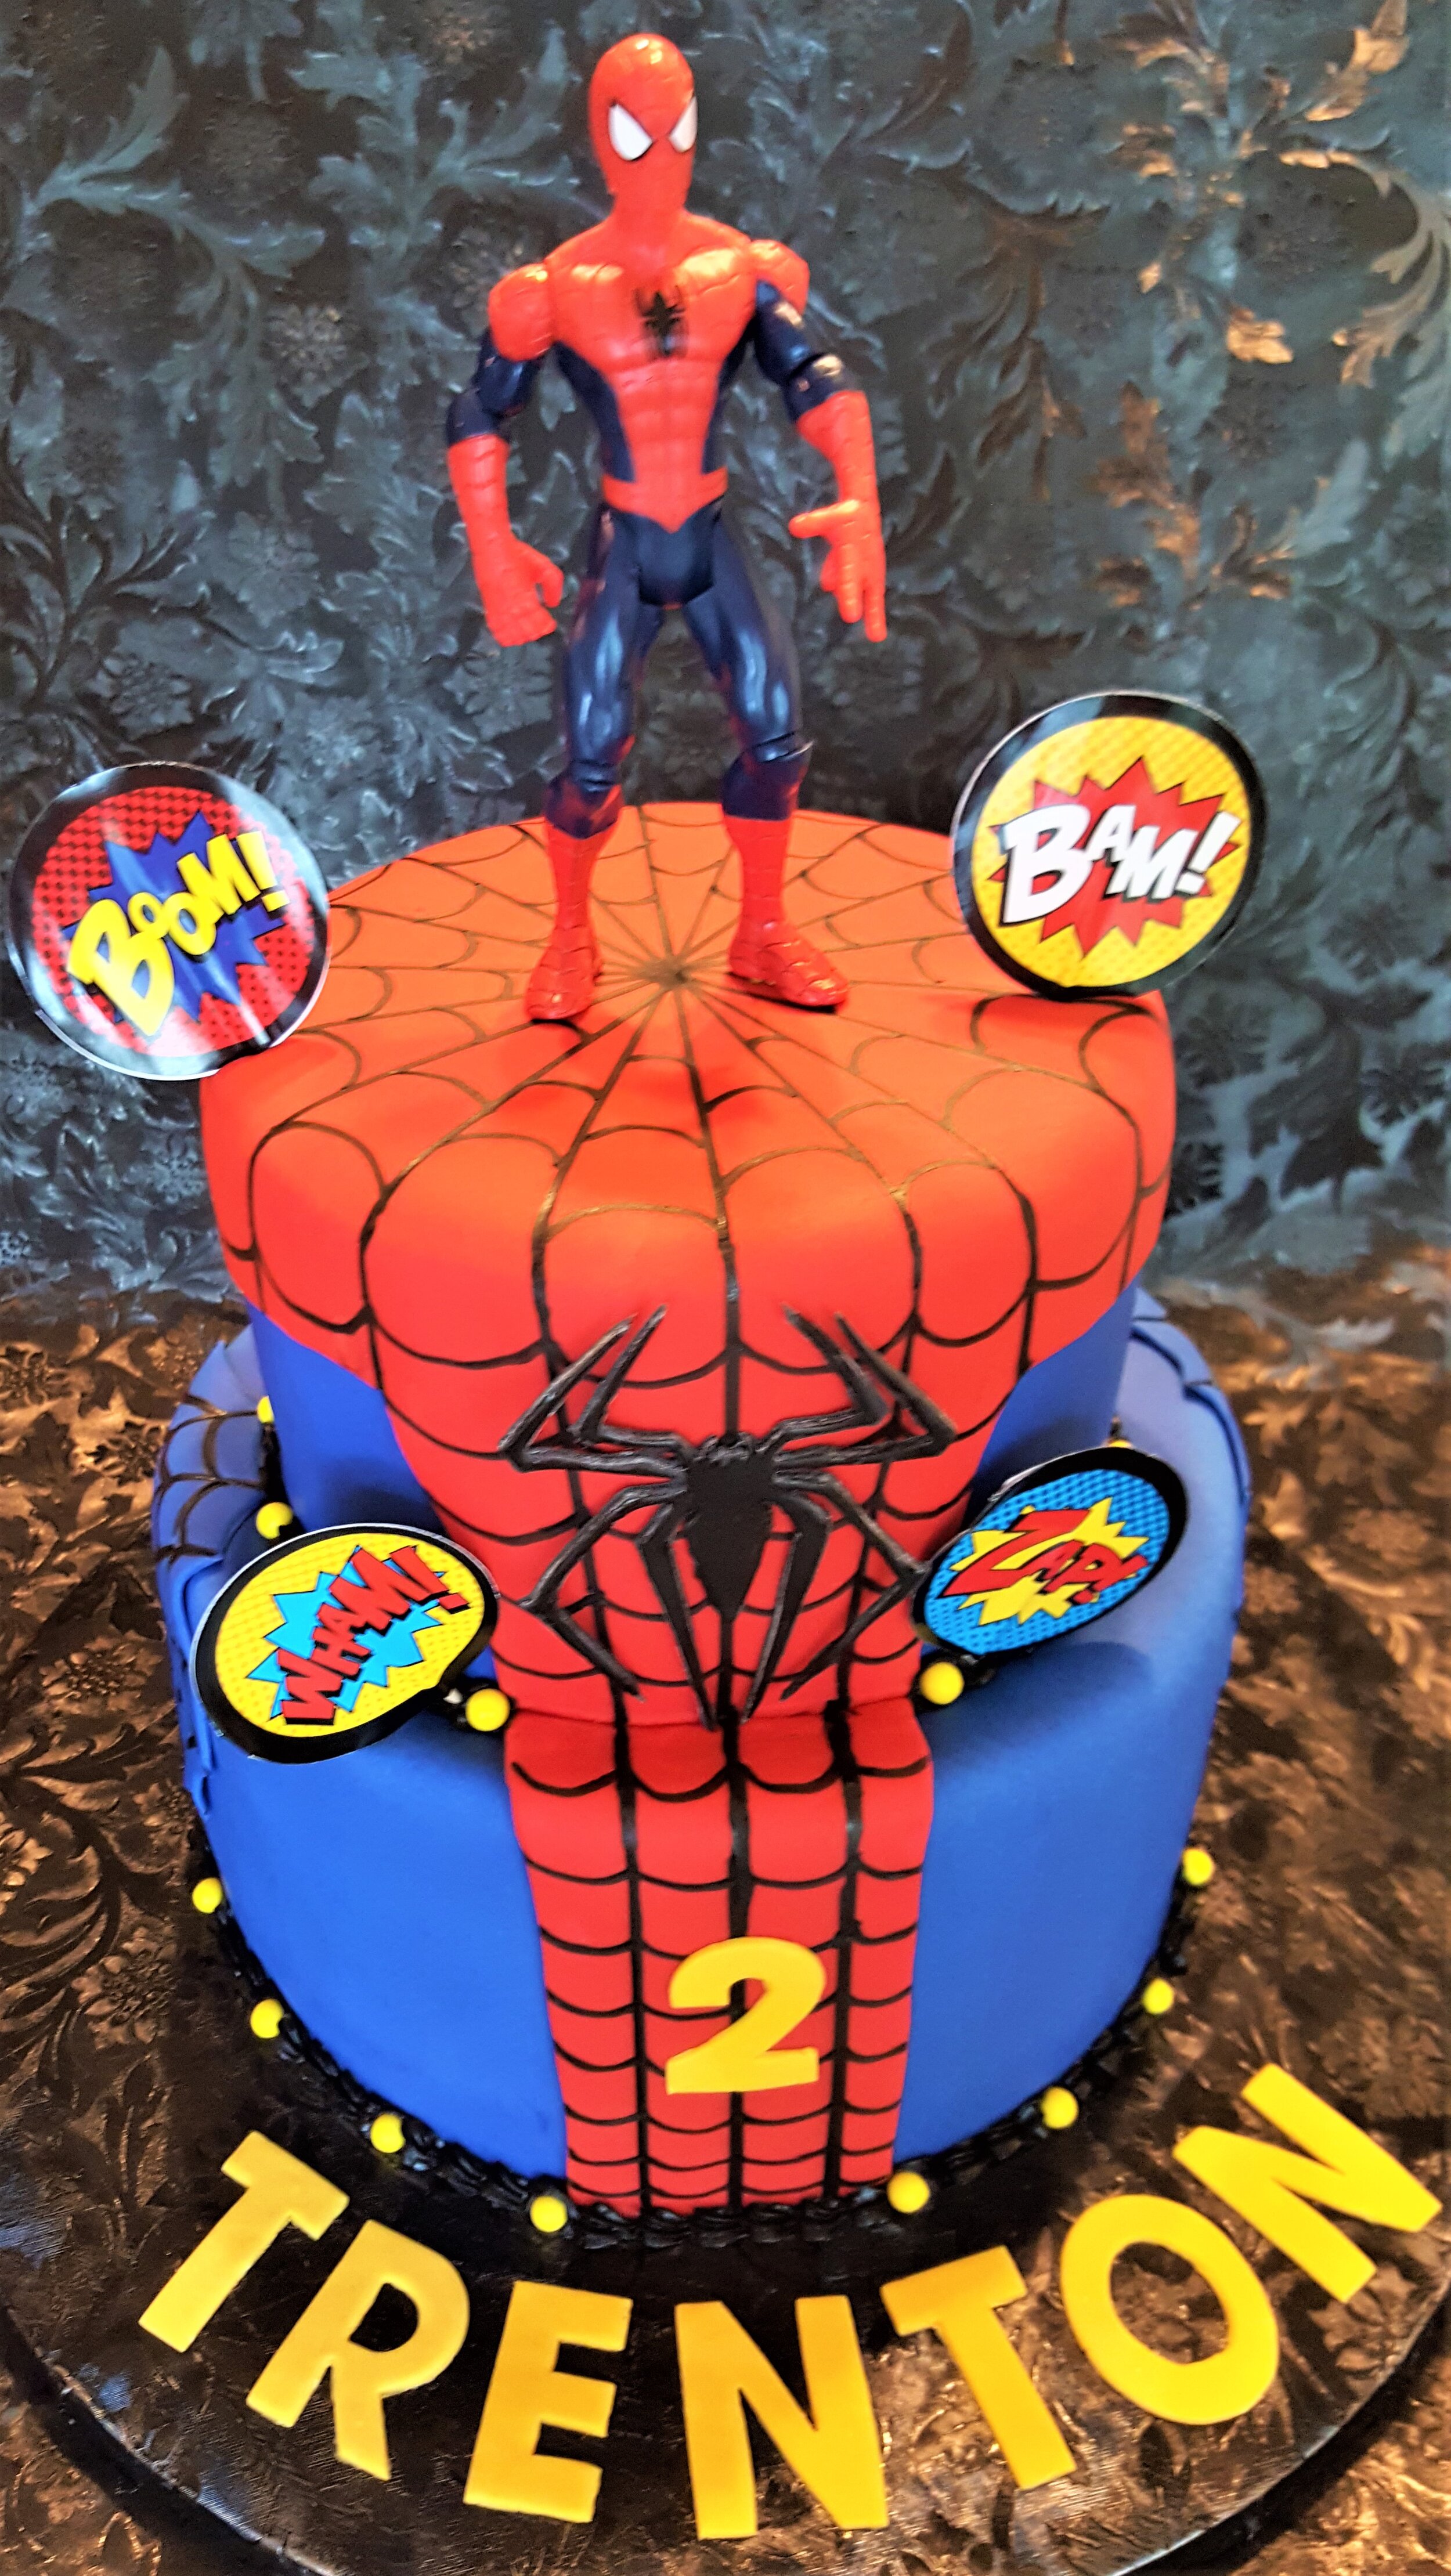 Chicago_Bakery-SpiderMan-Birthday-Cake.jpg